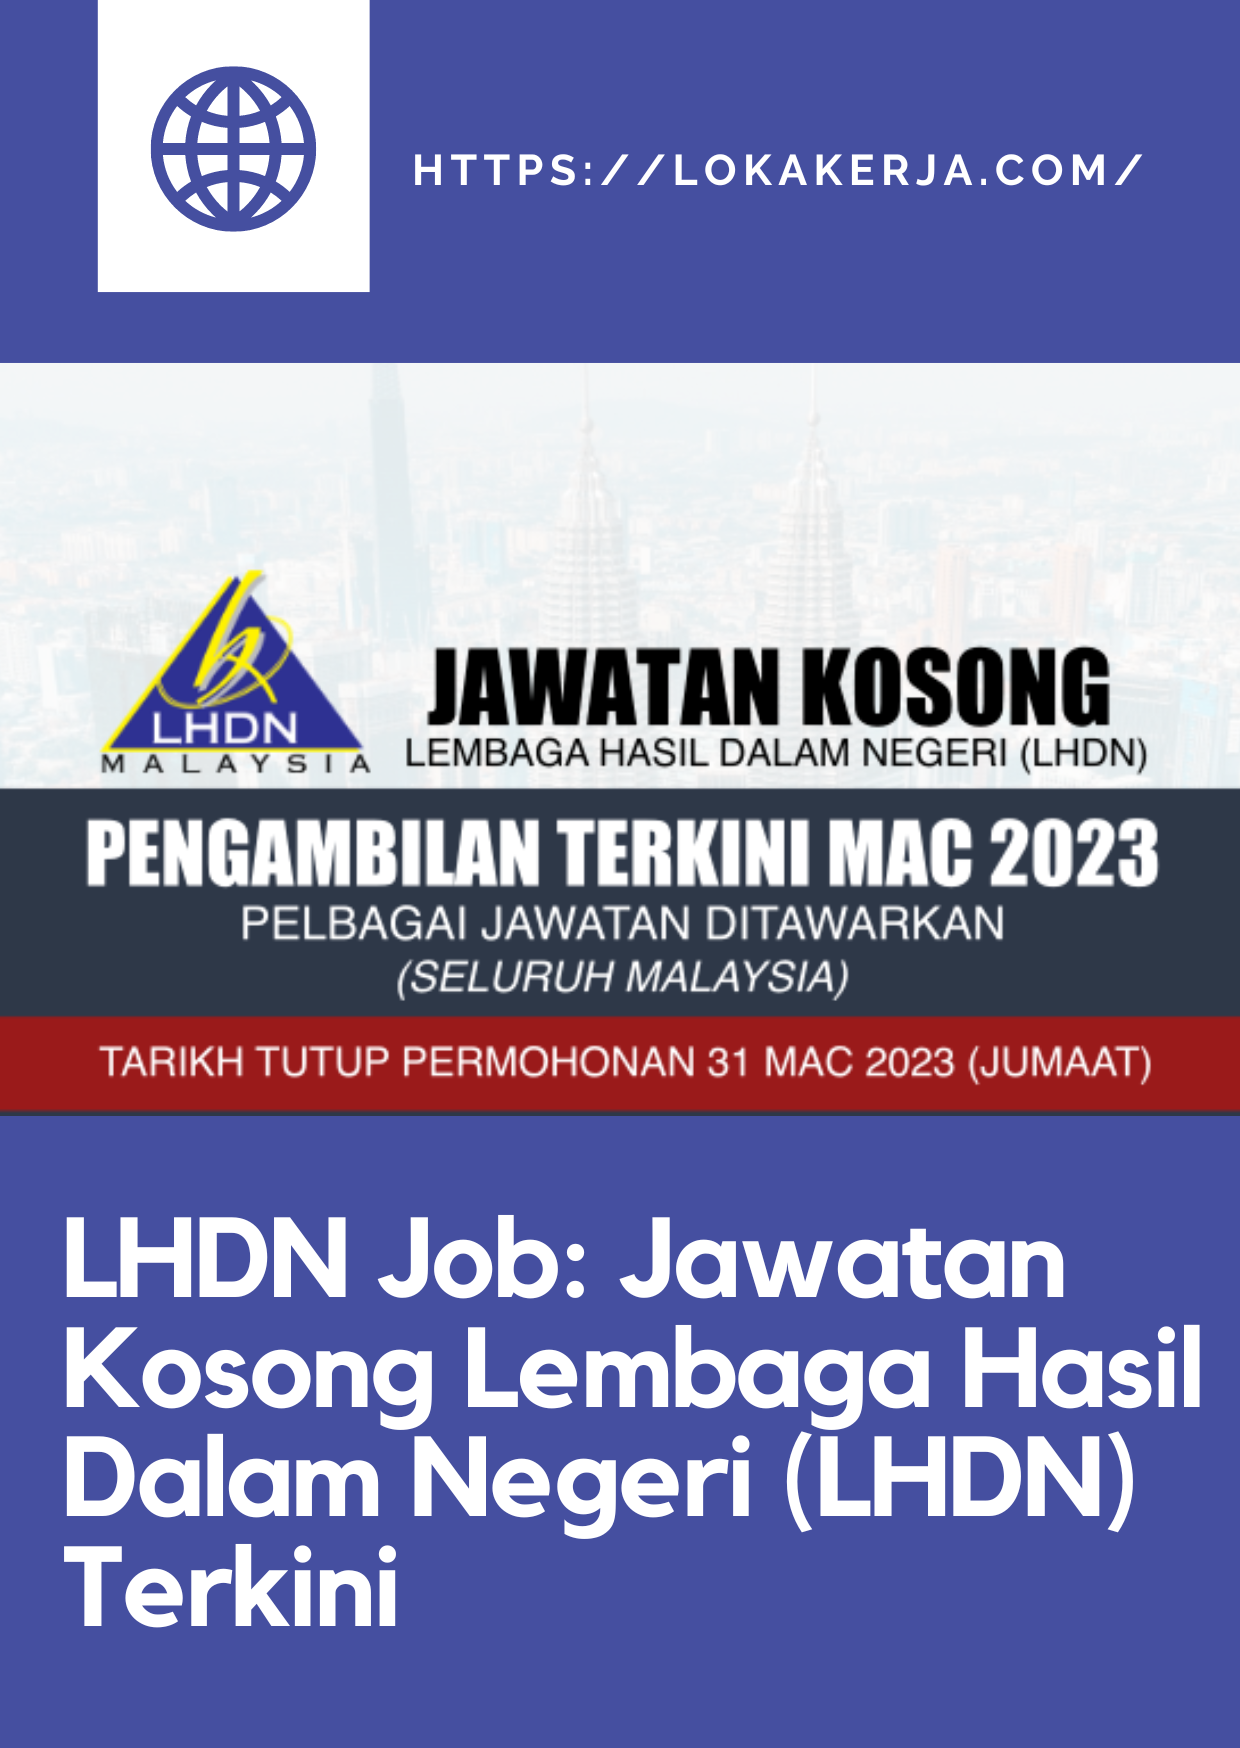 LHDN Job: Jawatan Kosong Lembaga Hasil Dalam Negeri (LHDN) Terkini